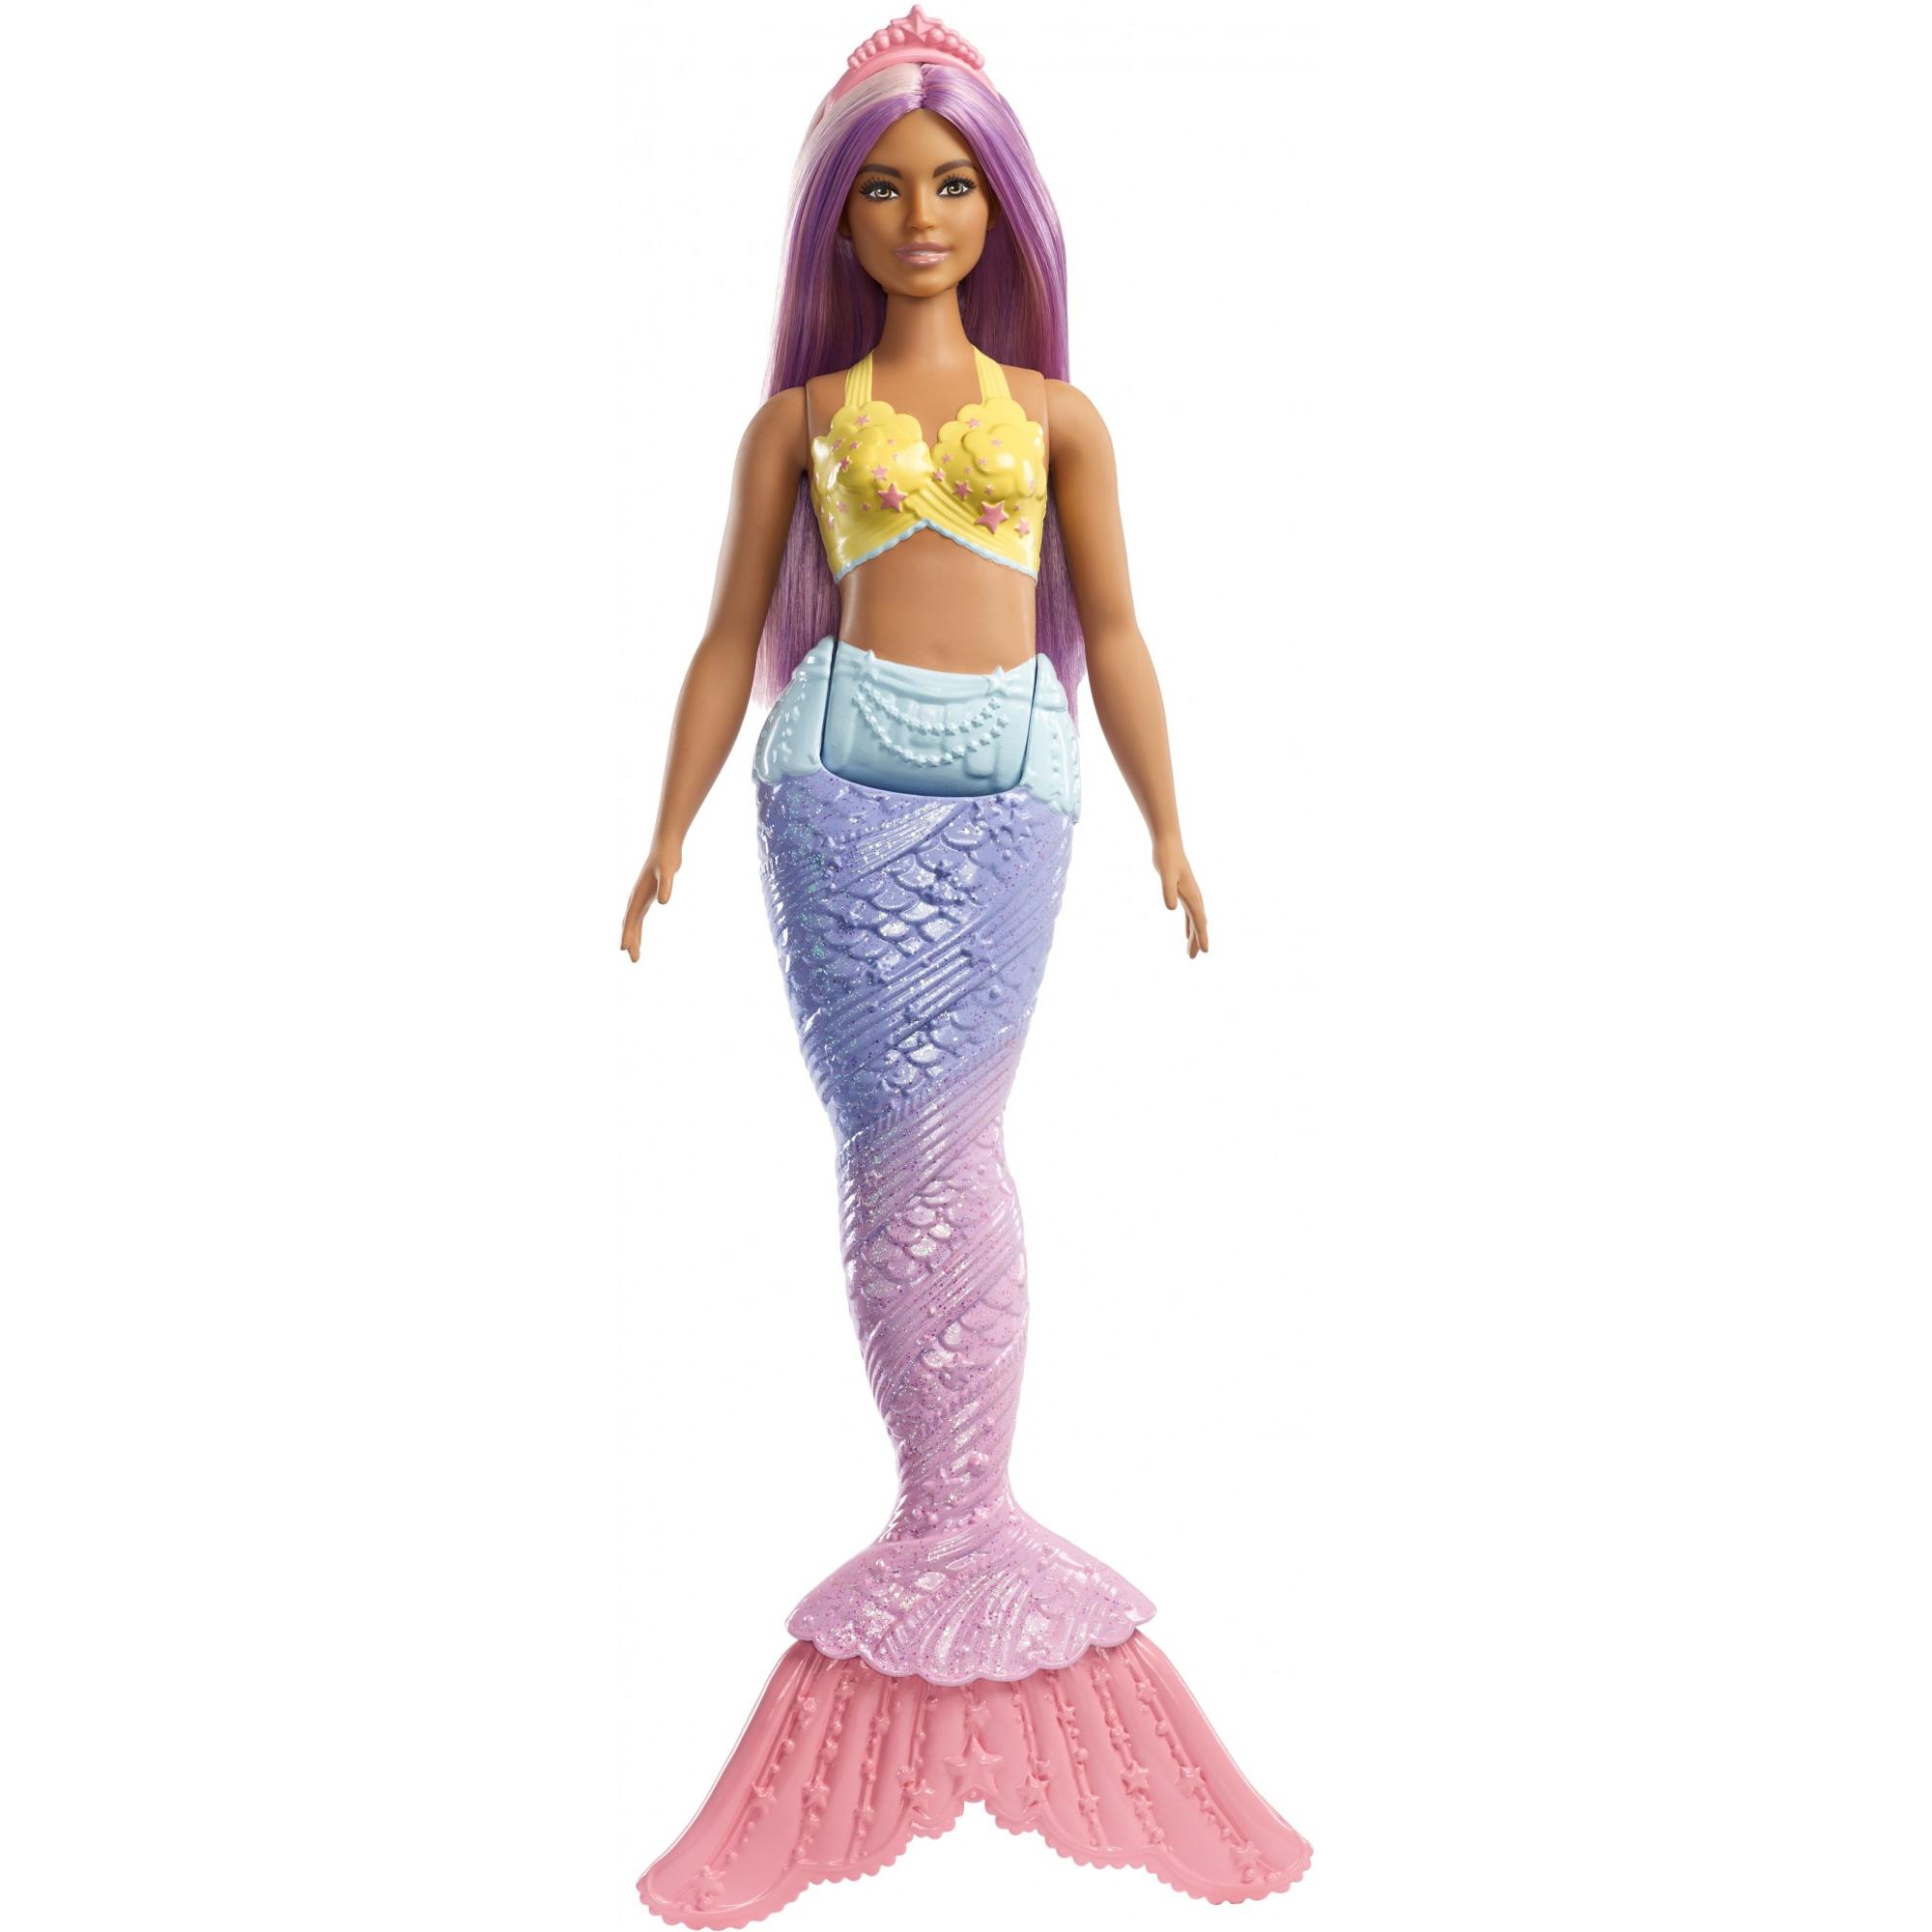 Barbie Dreamtopia Mermaid Doll with Long Purple Streaked Hair - image 1 of 8